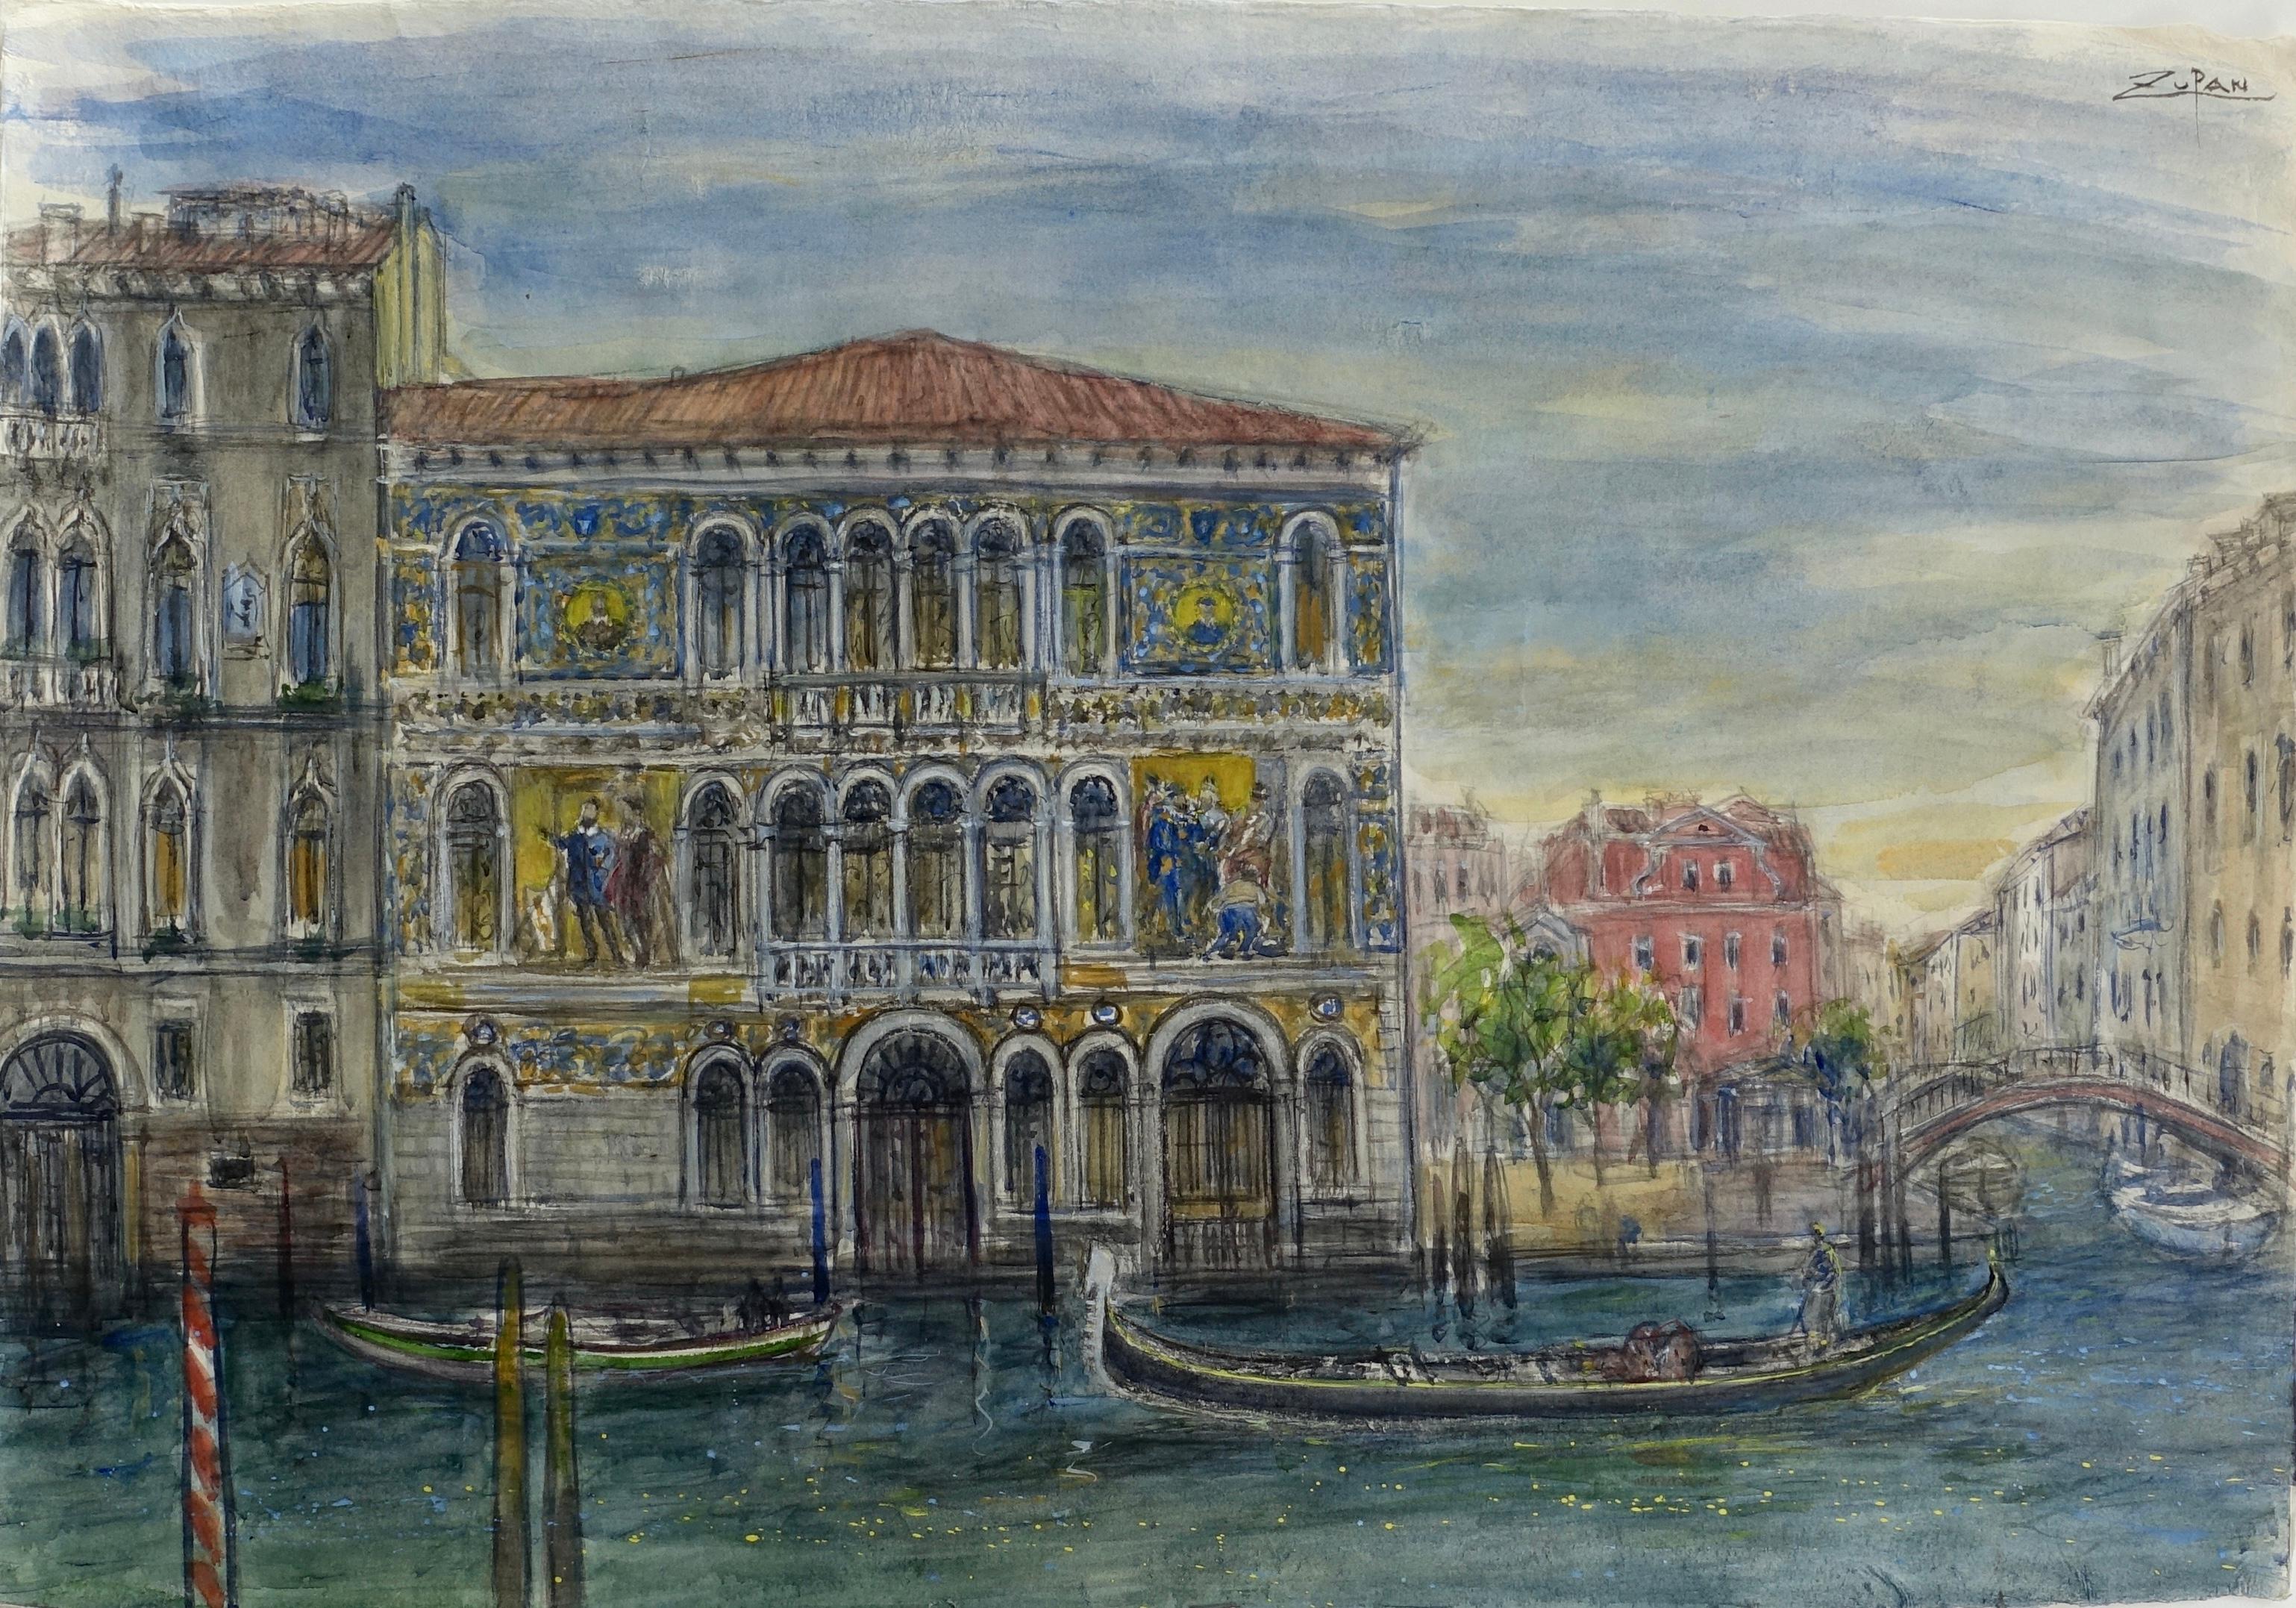 Bruno Zupan Landscape Art - "Mosaic Palace on Grand Canal"